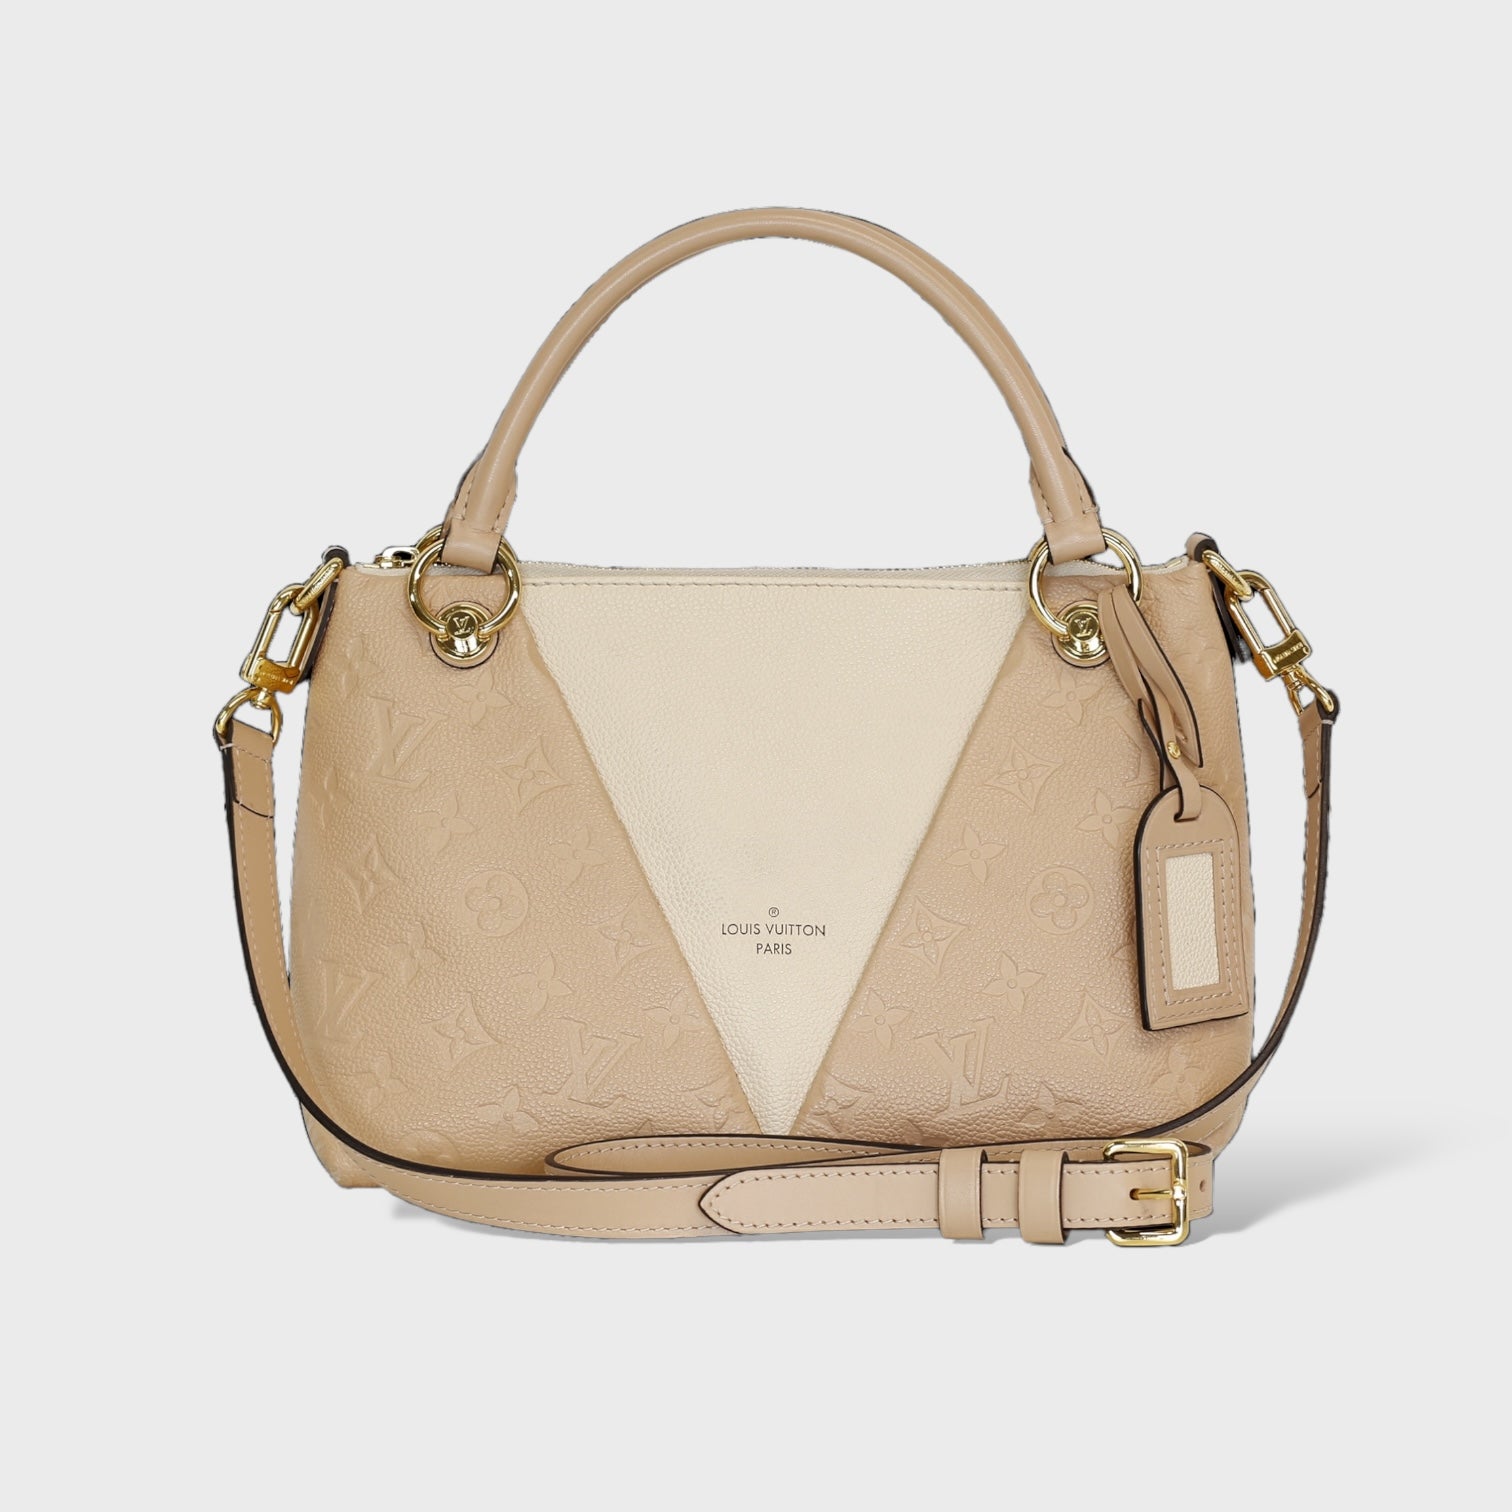 Second Hand Louis Vuitton Handtasche online kaufen auf kaleaz.